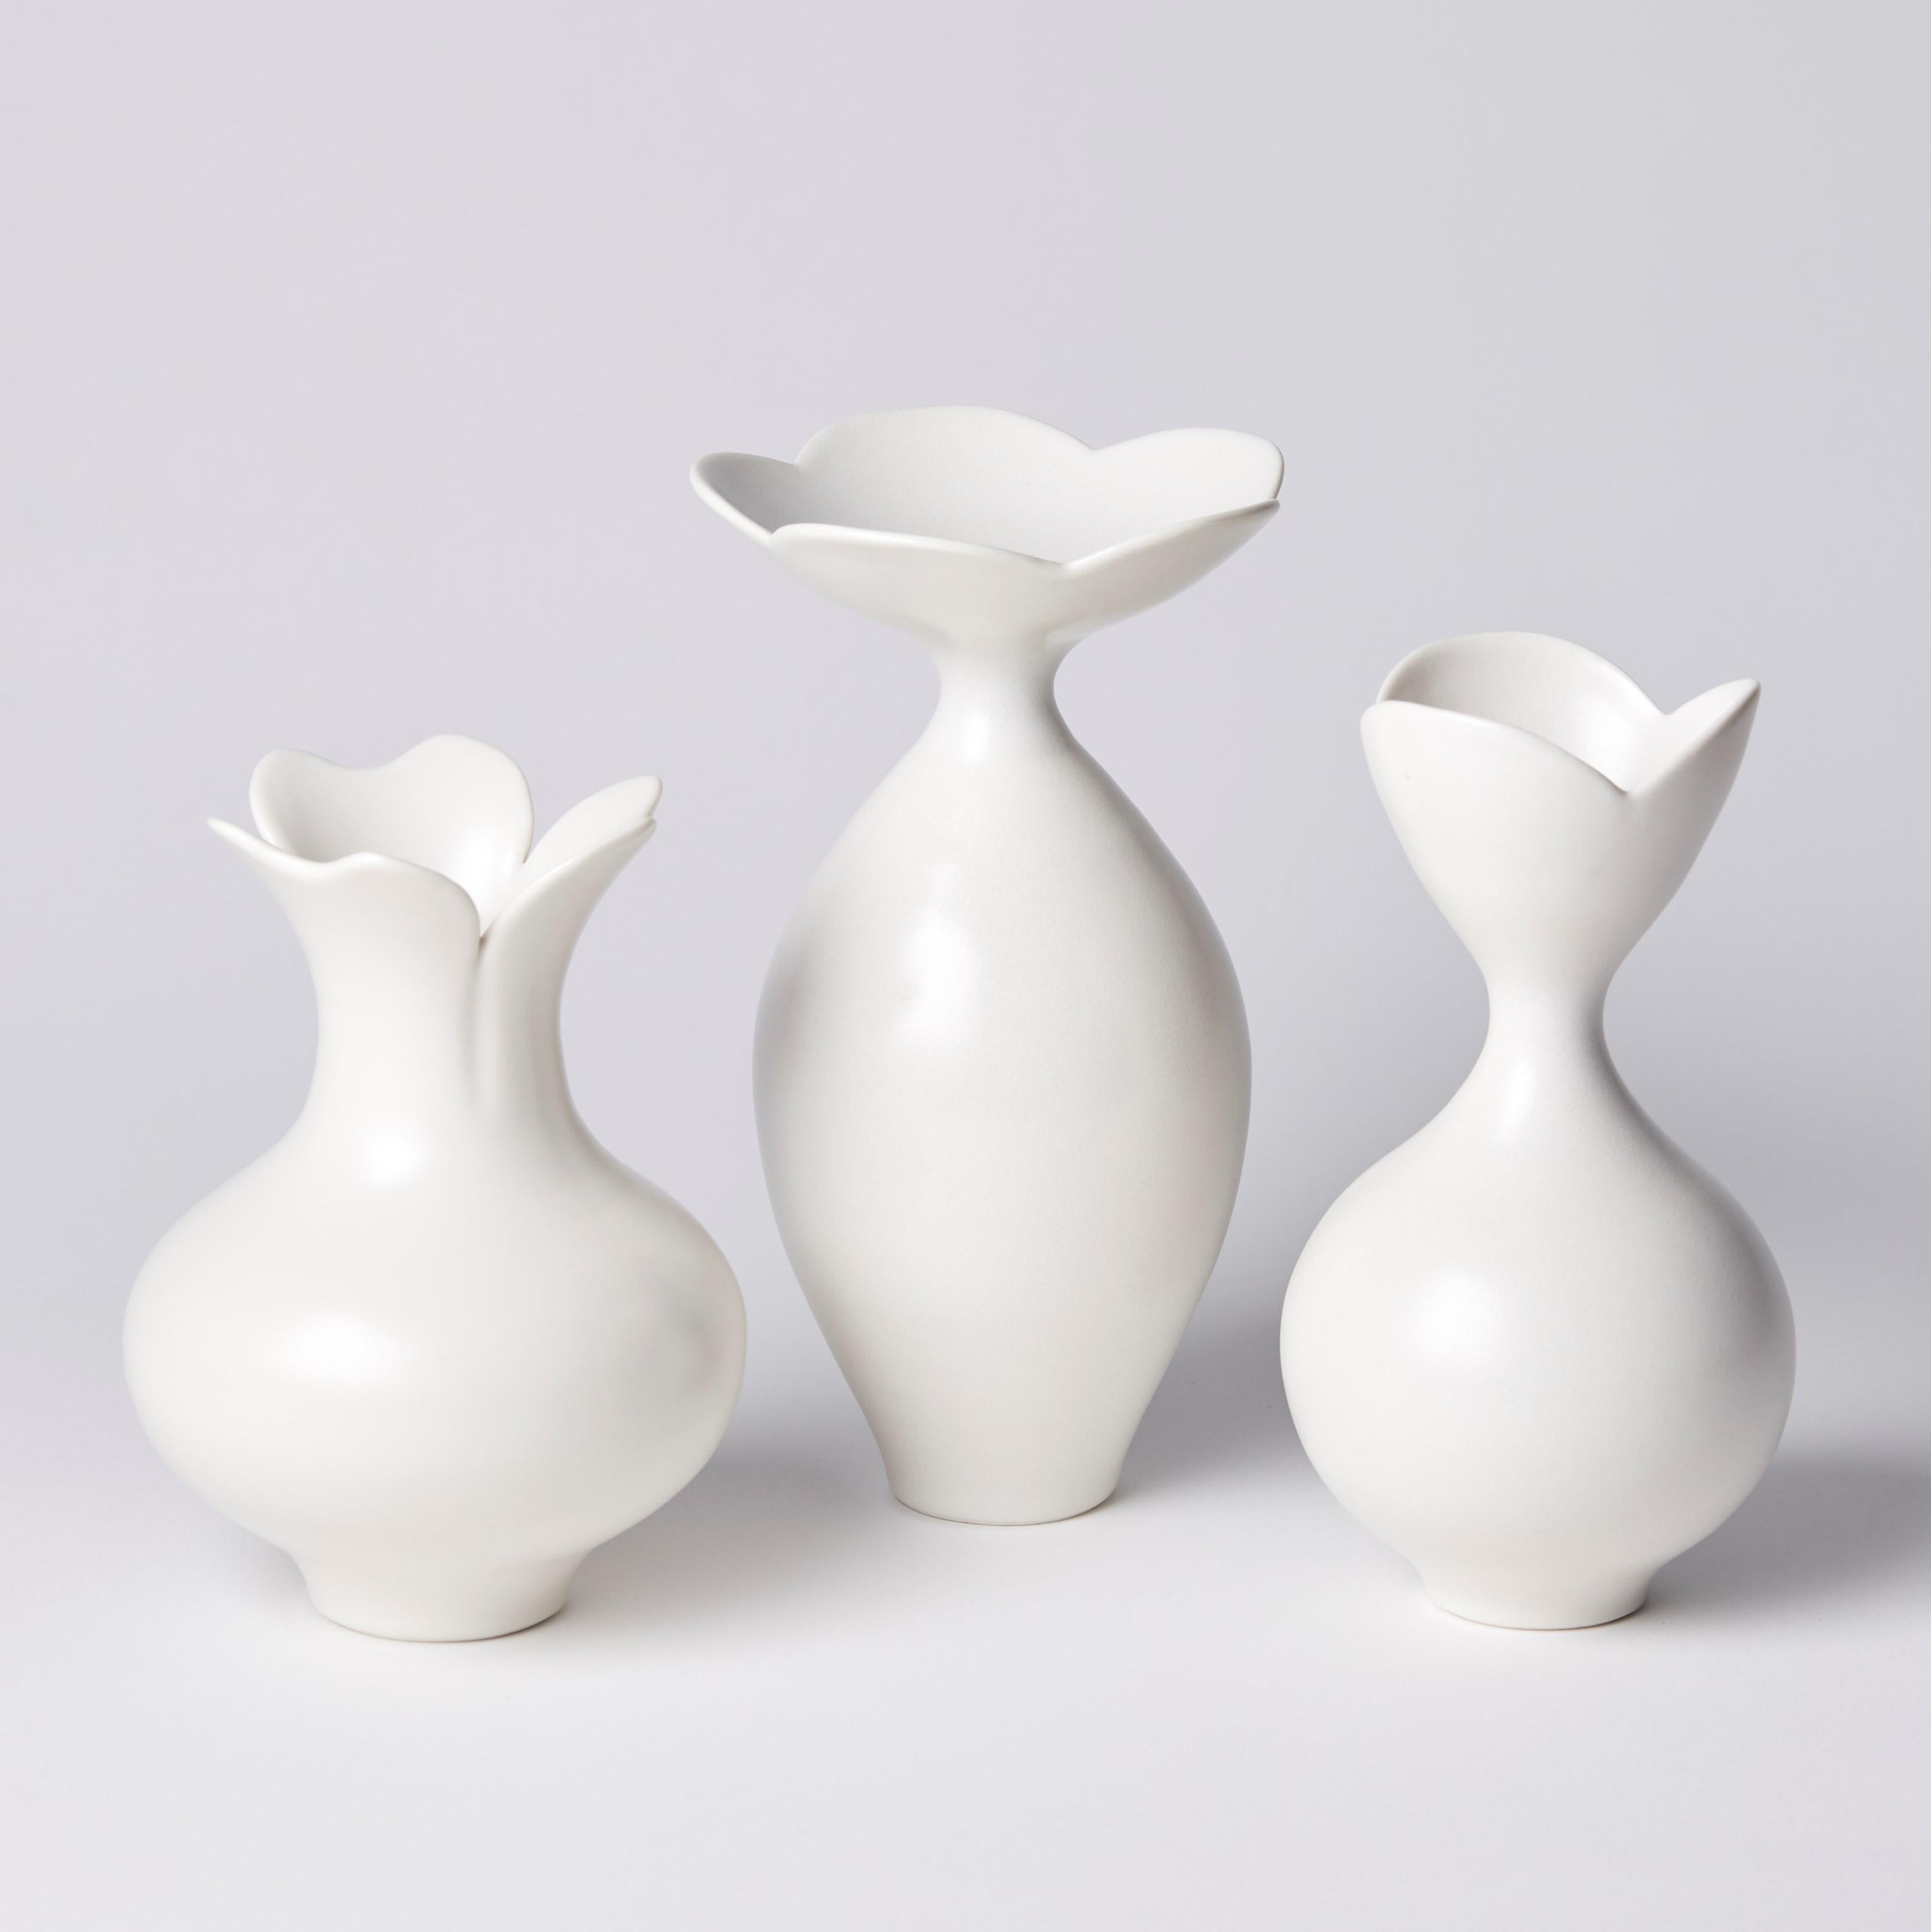 Organic Modern Vase with Three Petal Rim, a Unique White Porcelain Vase by Vivienne Foley